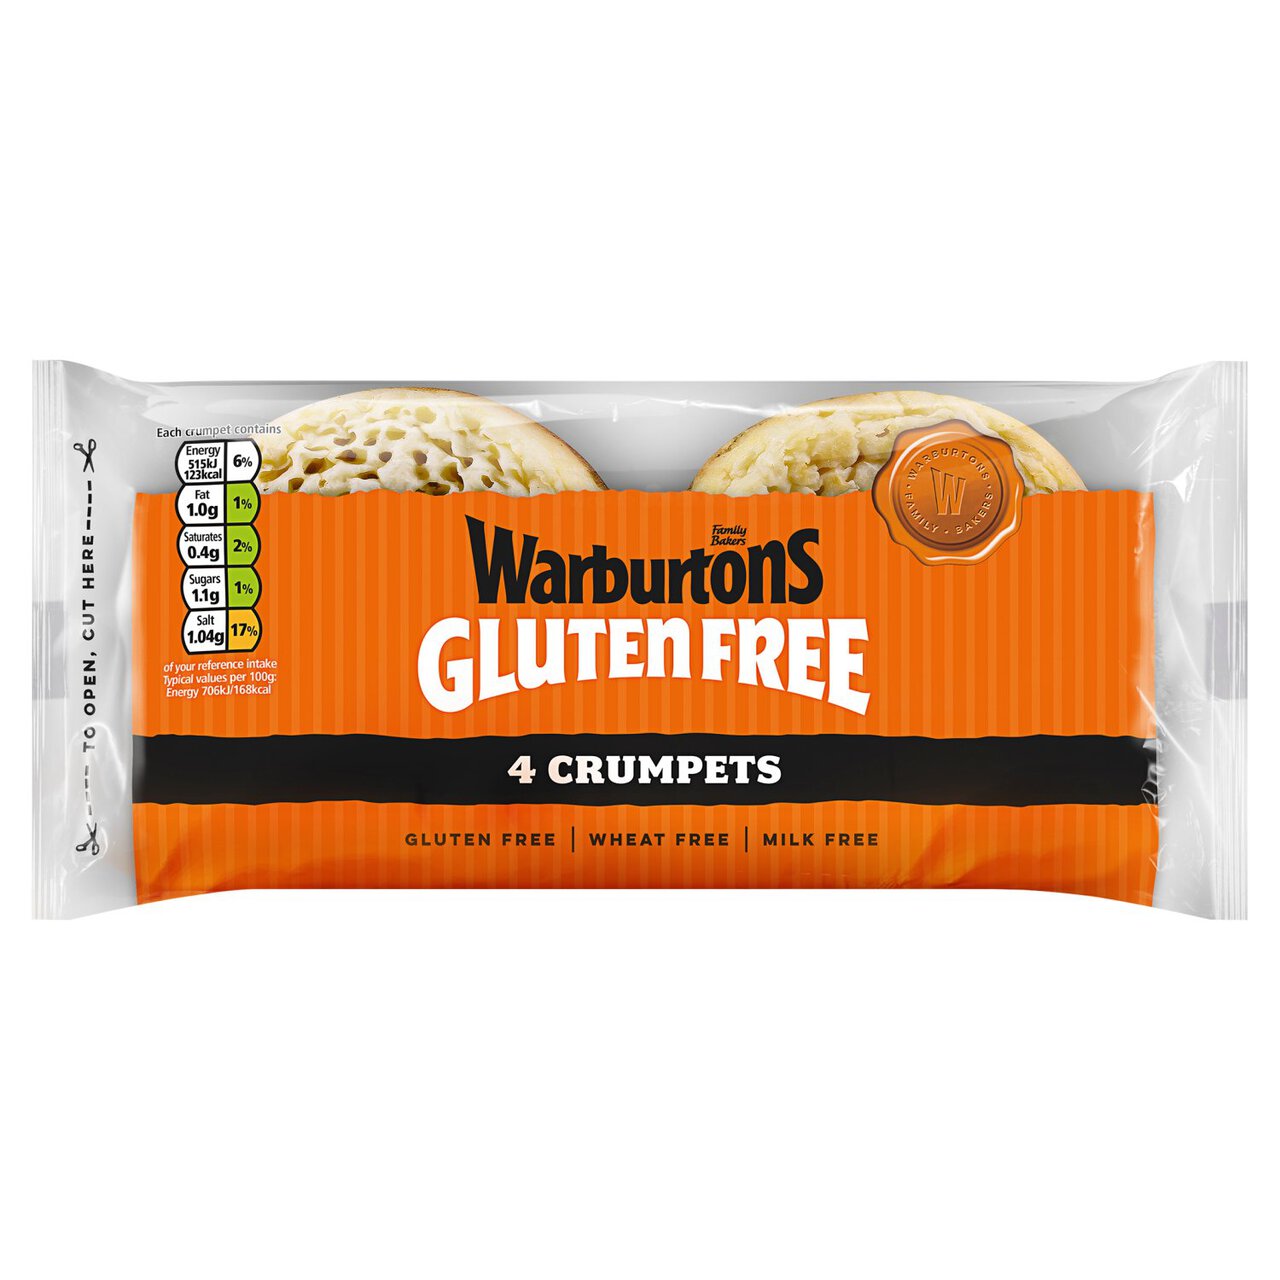 Warburtons Gluten Free 4 Crumpets 4 per pack